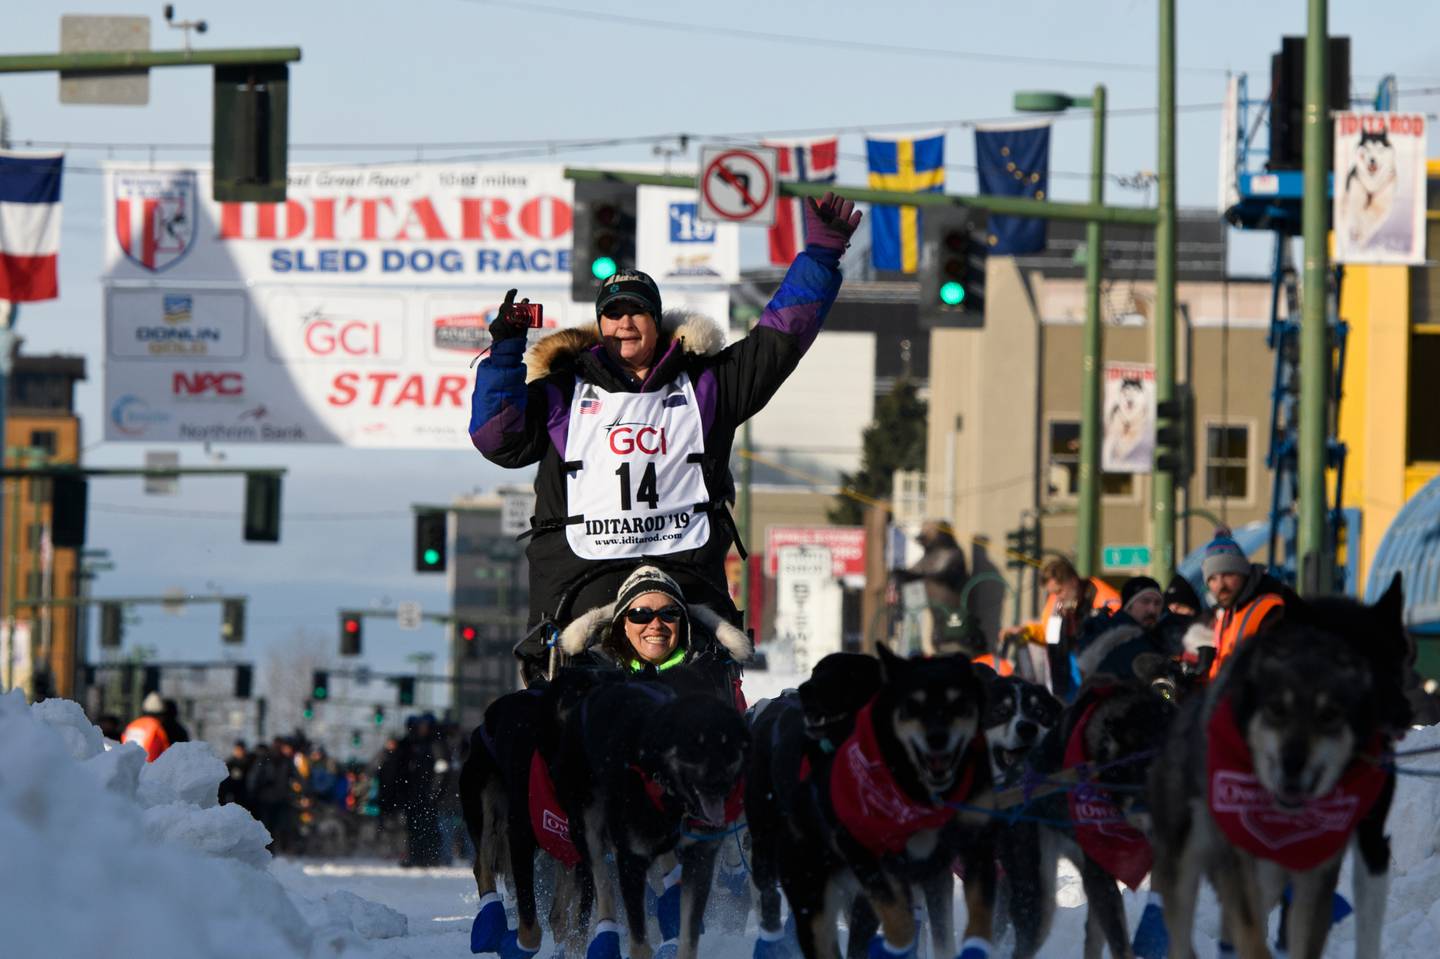 Iditarod 2019, Iditarod Trail Sled Dog Race, ceremonial start